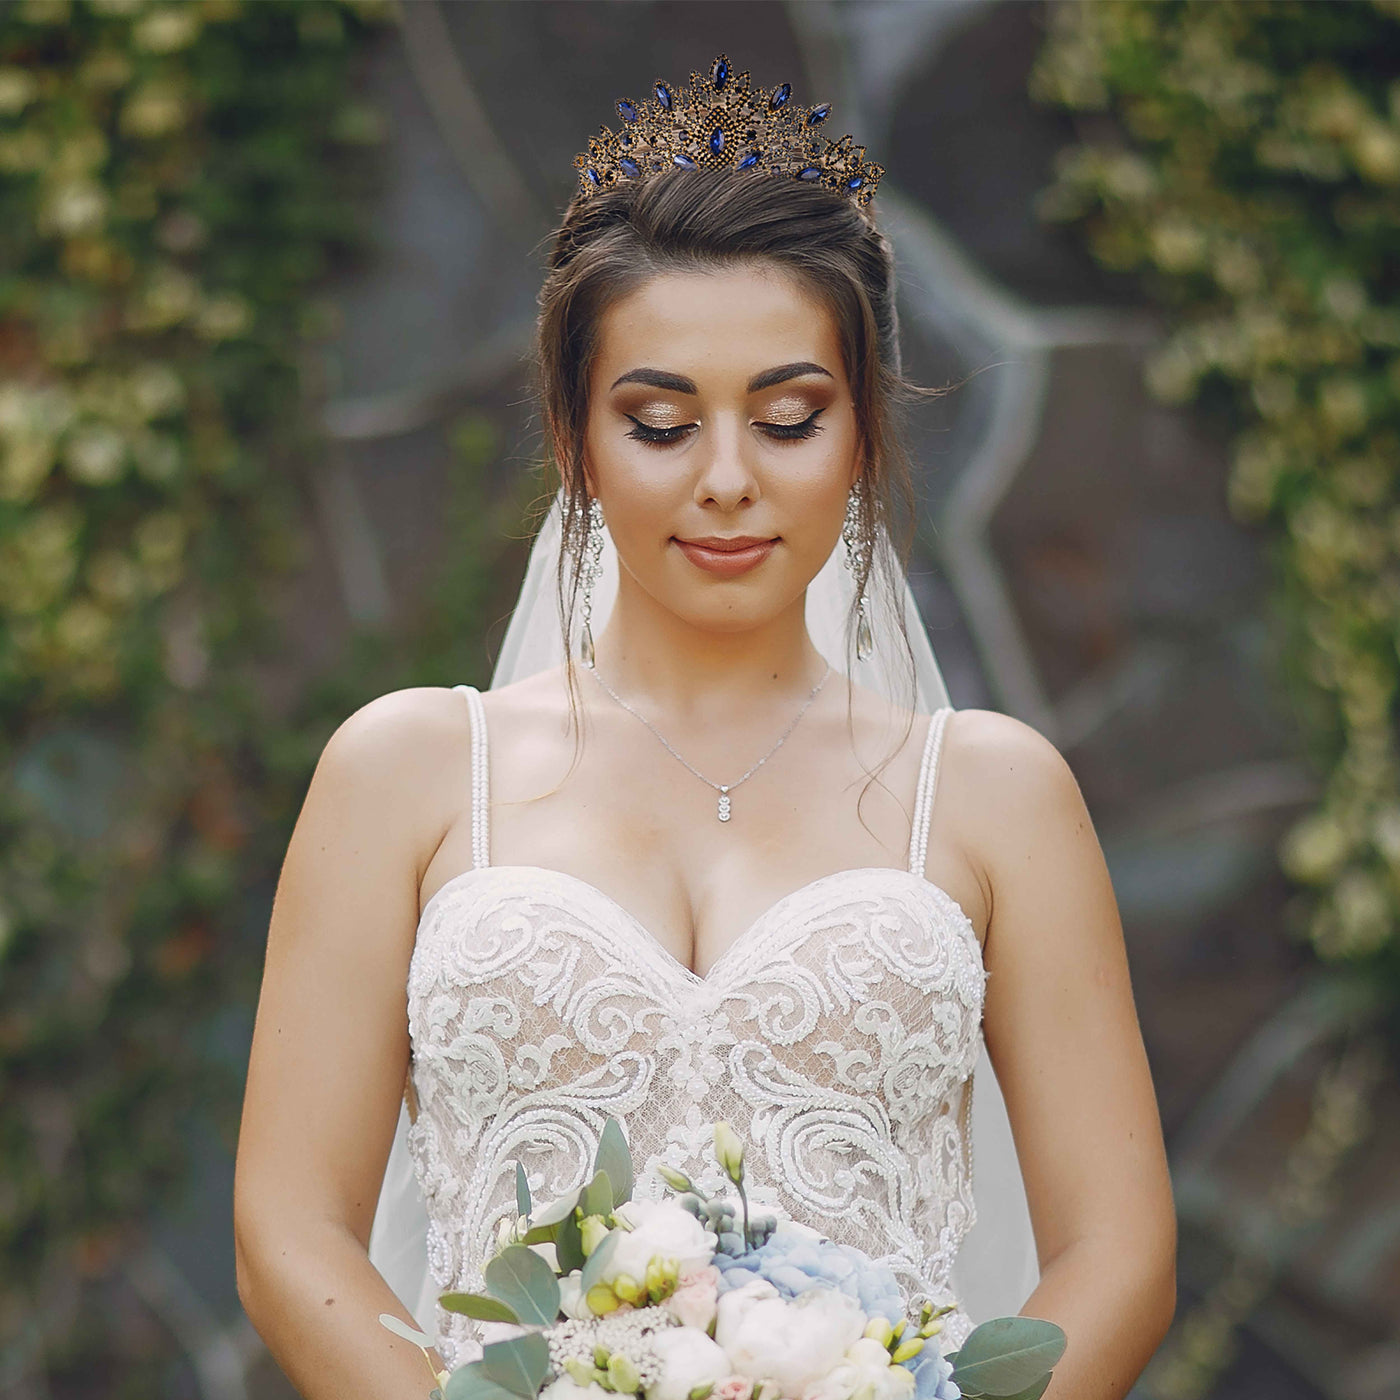 Floral Design Crown Bridal Wedding Crown Princess Crown